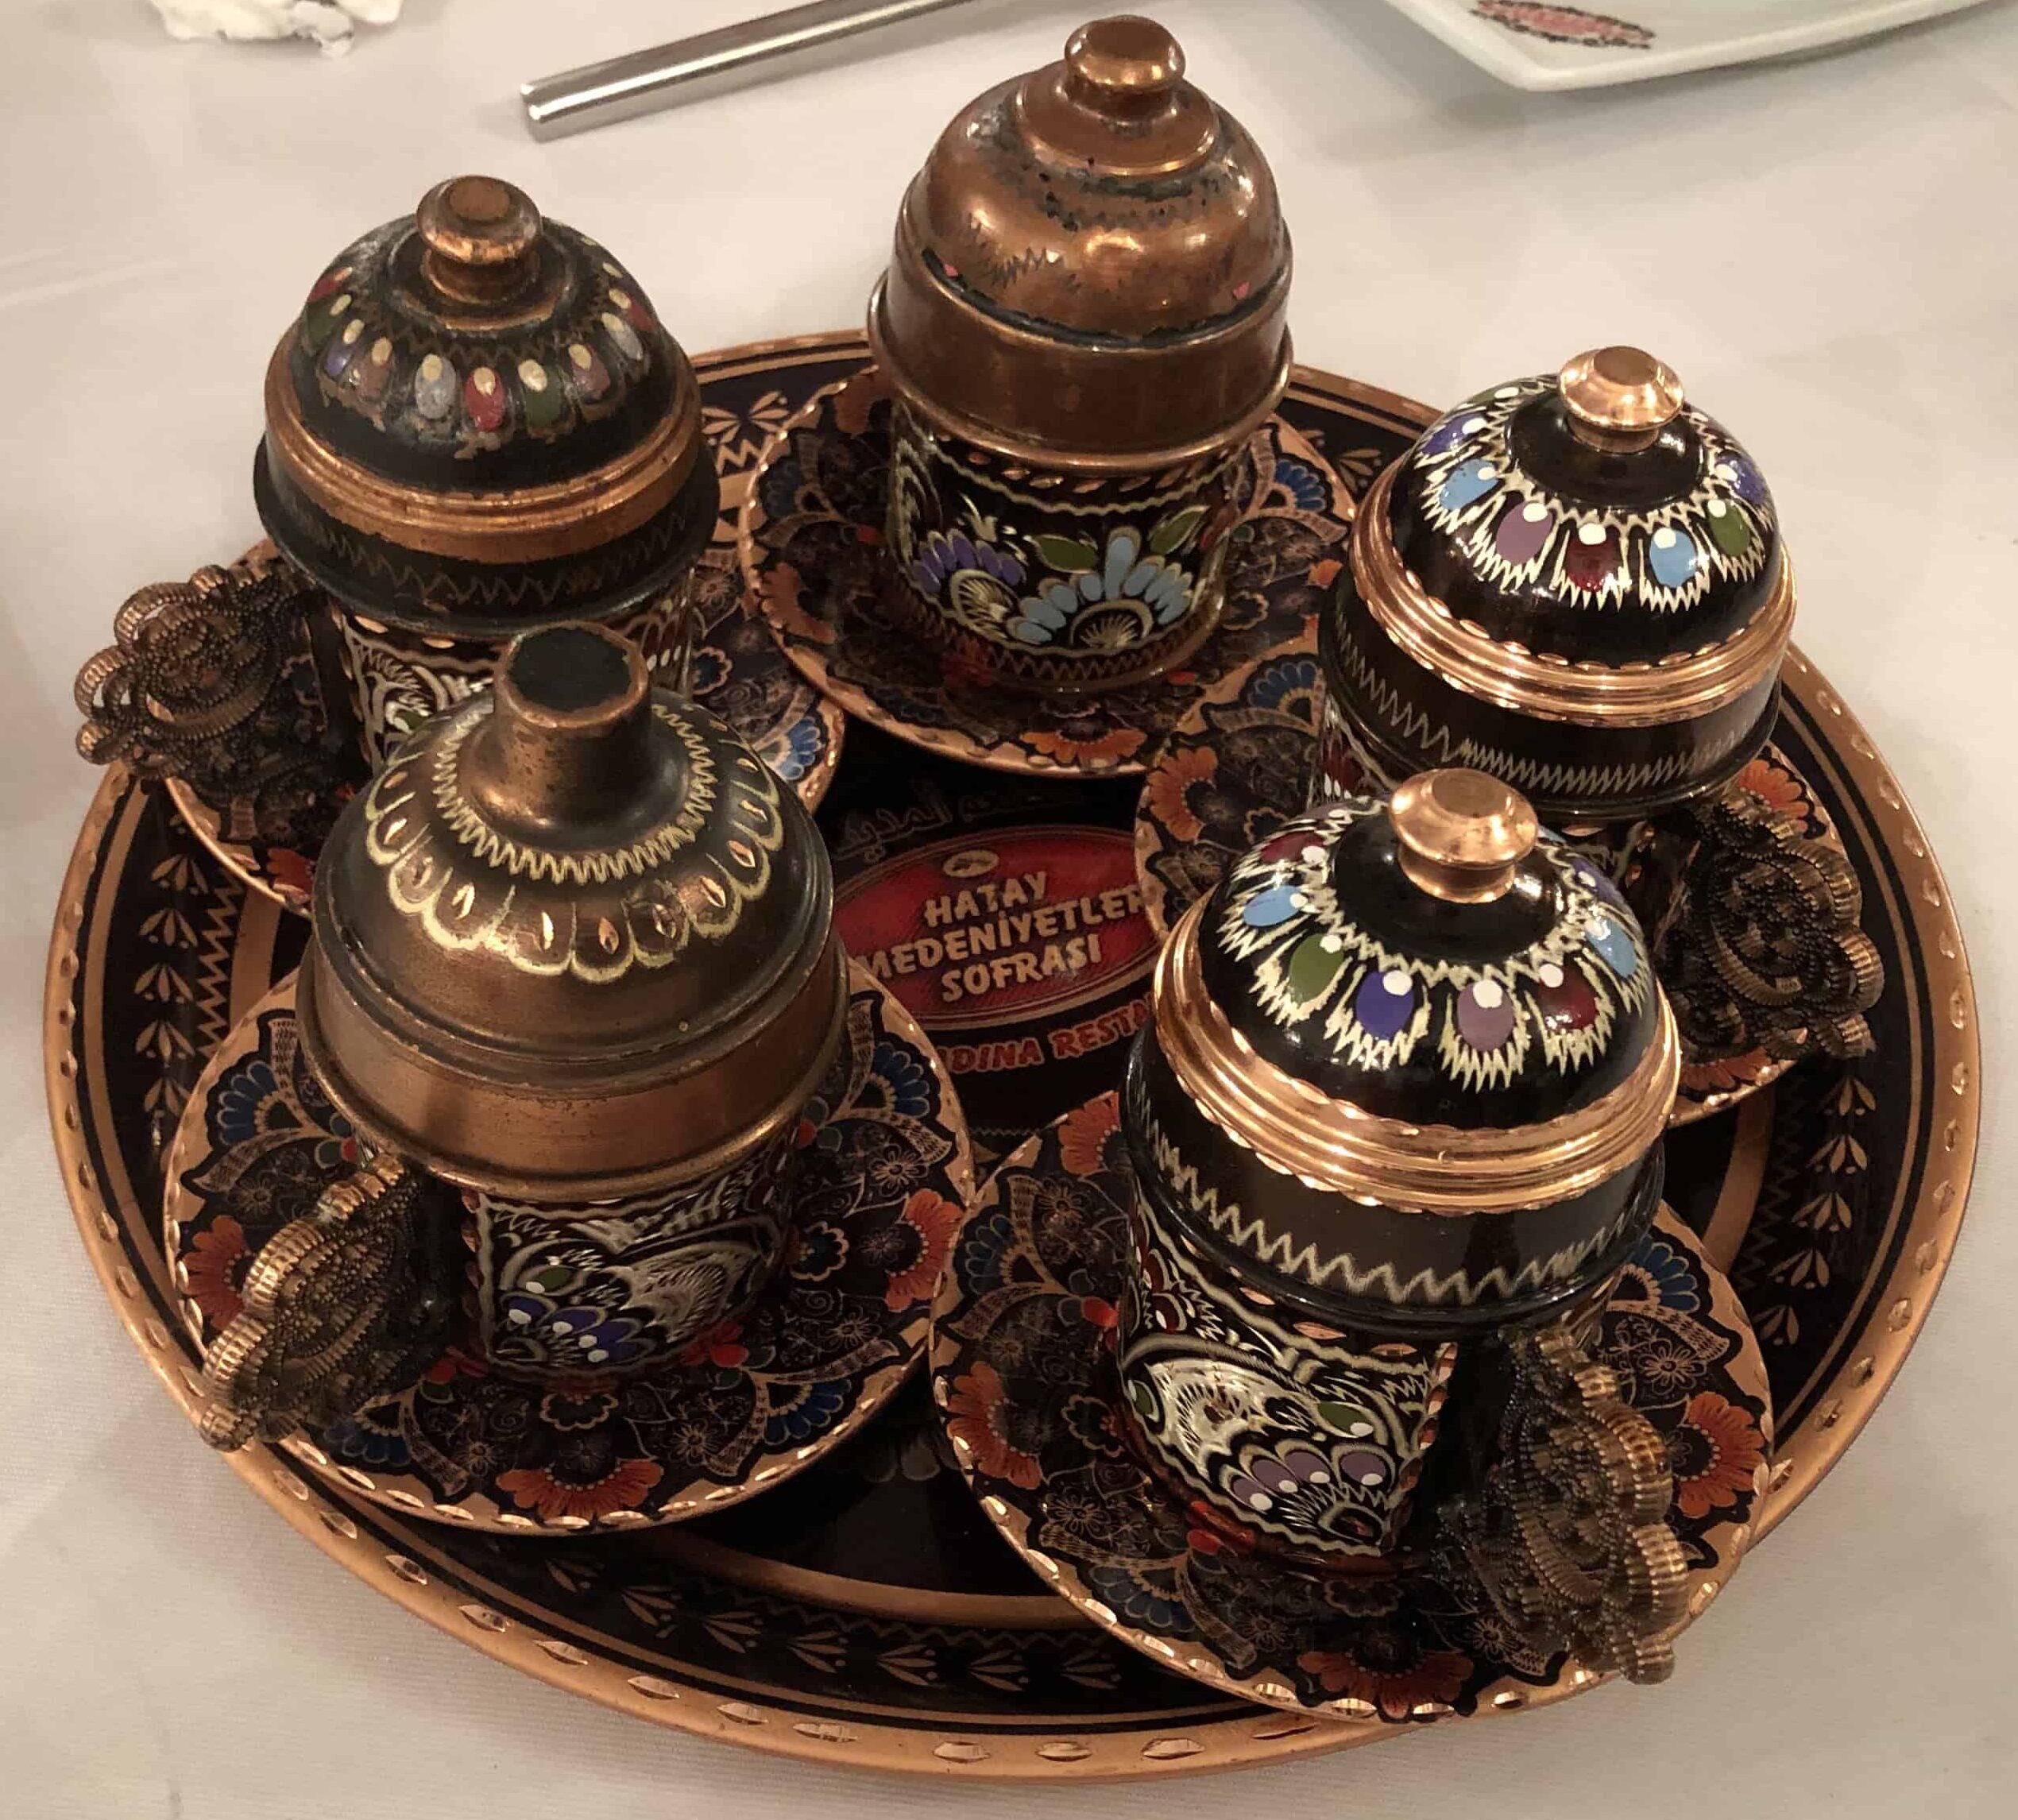 Turkish tea at Hatay Medeniyetler Sofrası